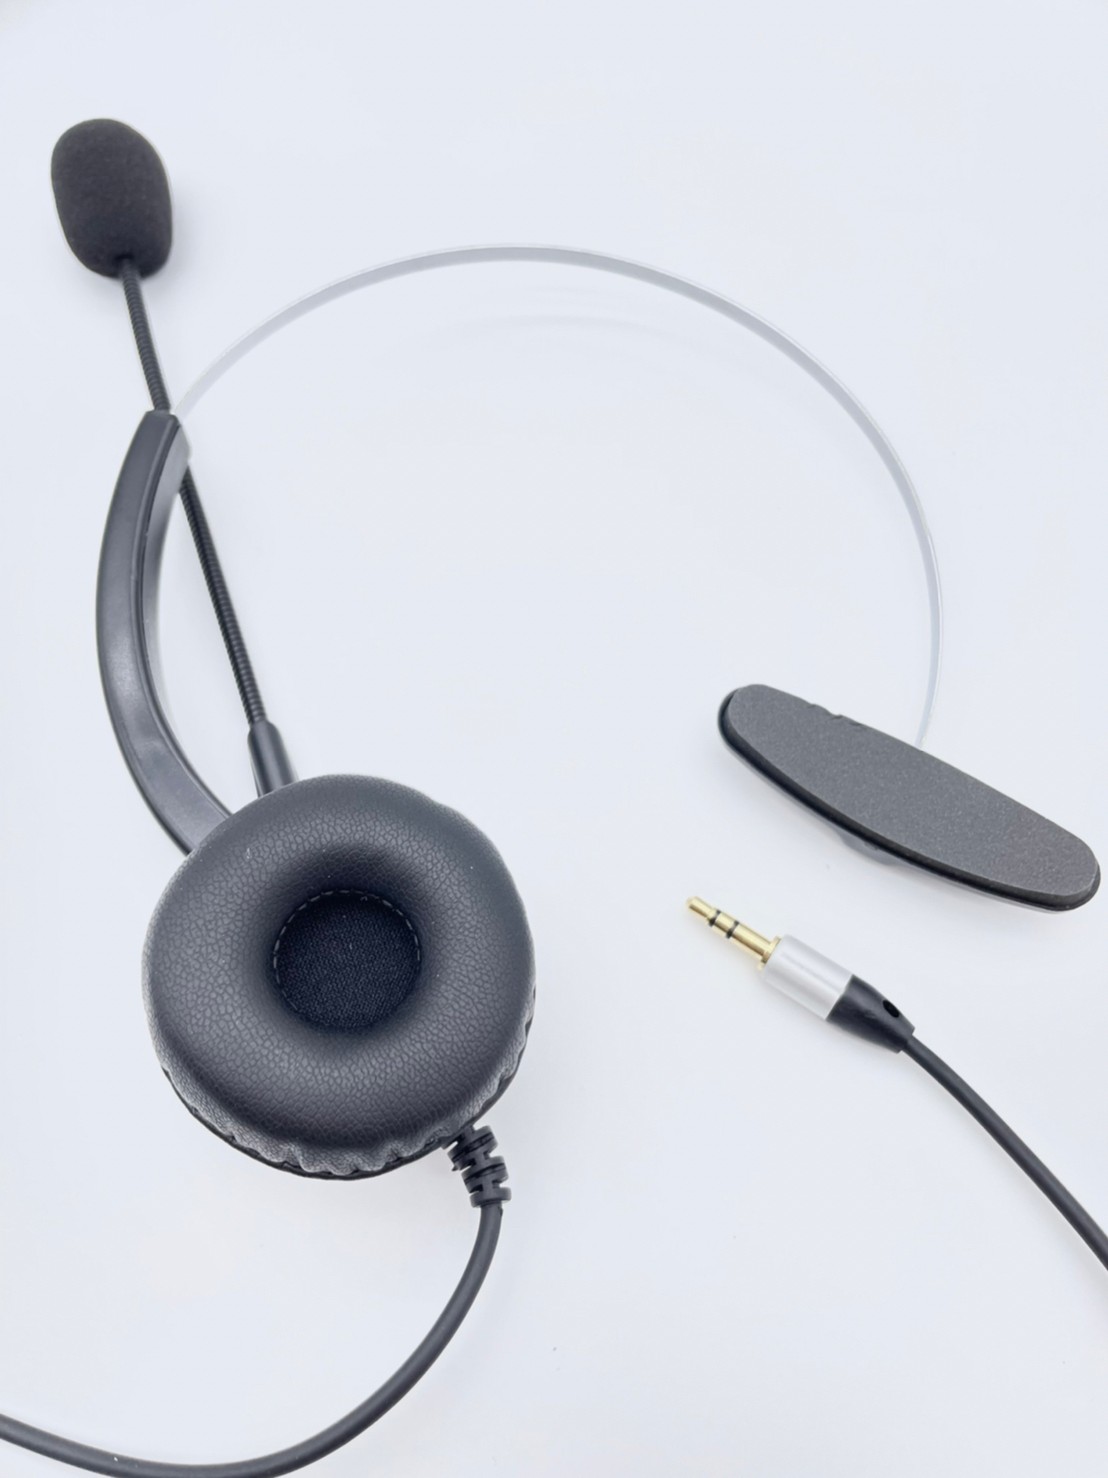 國際牌電話機電話耳機麥克風office phone headset 單耳 2.5mm